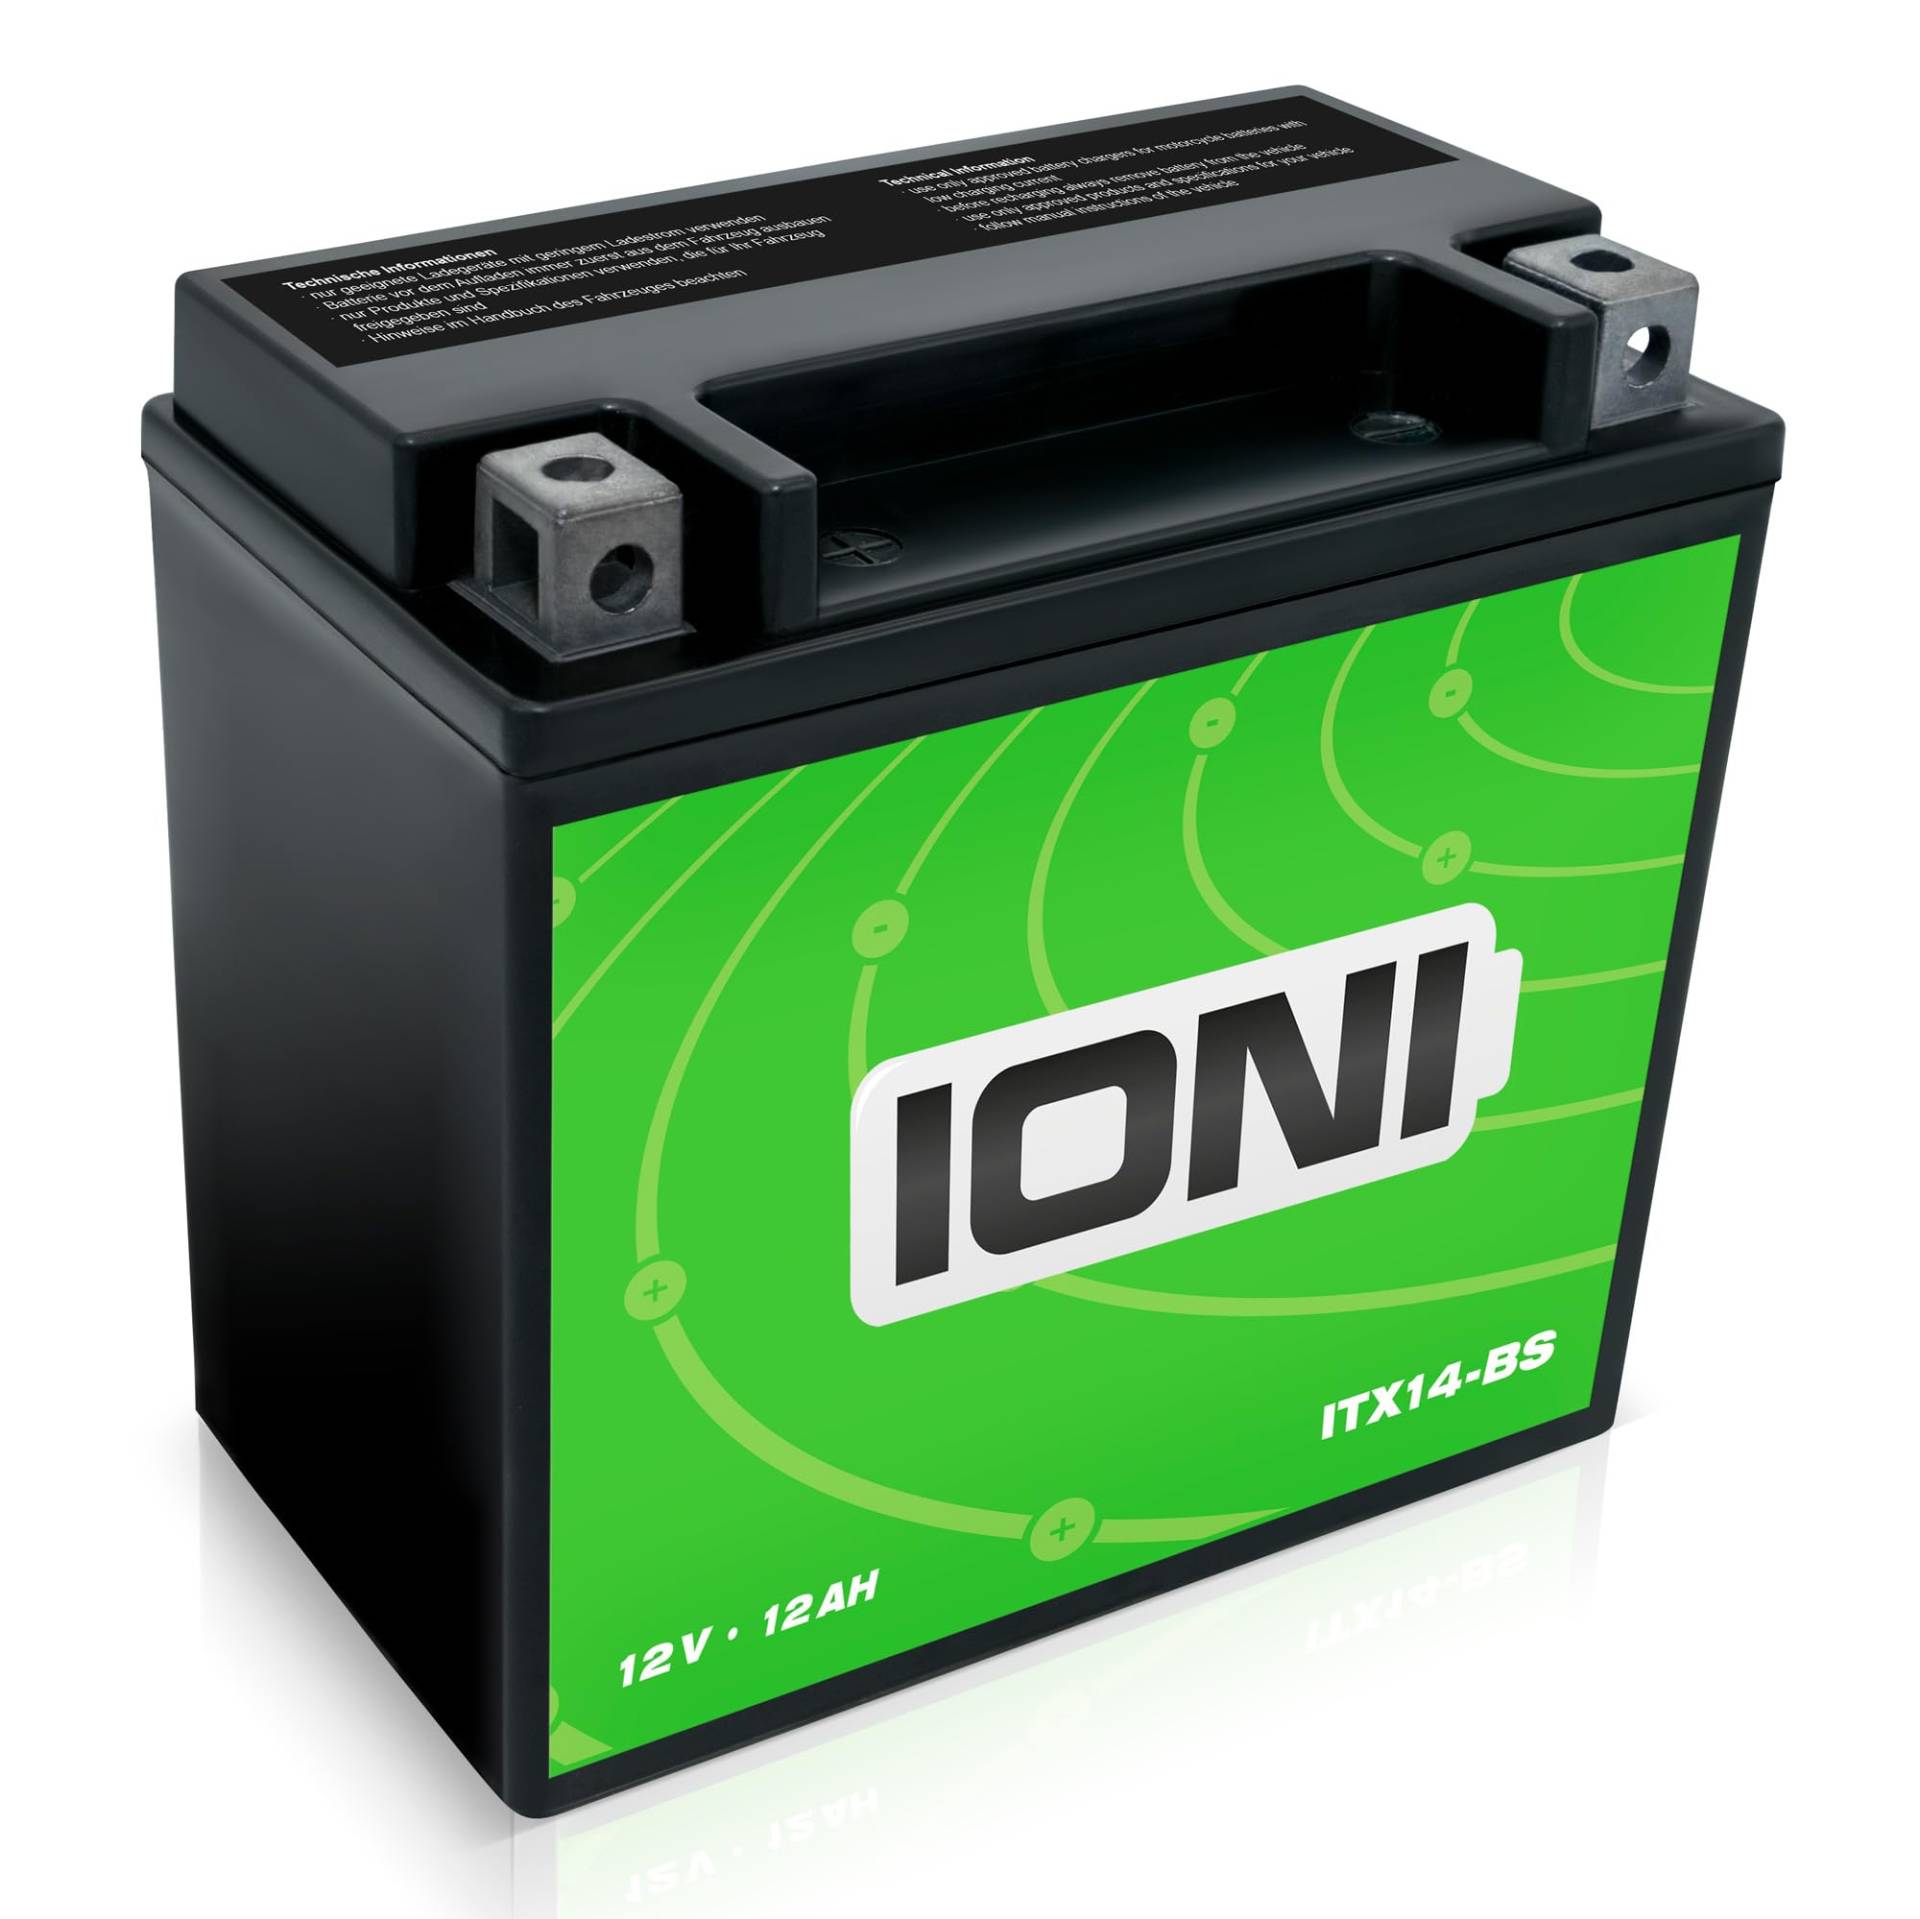 IONI ITX14-BS 12V 12Ah AGM Batterie kompatibel mit YTX14-BS versiegelt wartungsfrei vorgeladen Akkumulator Motorradbatterie von IONI